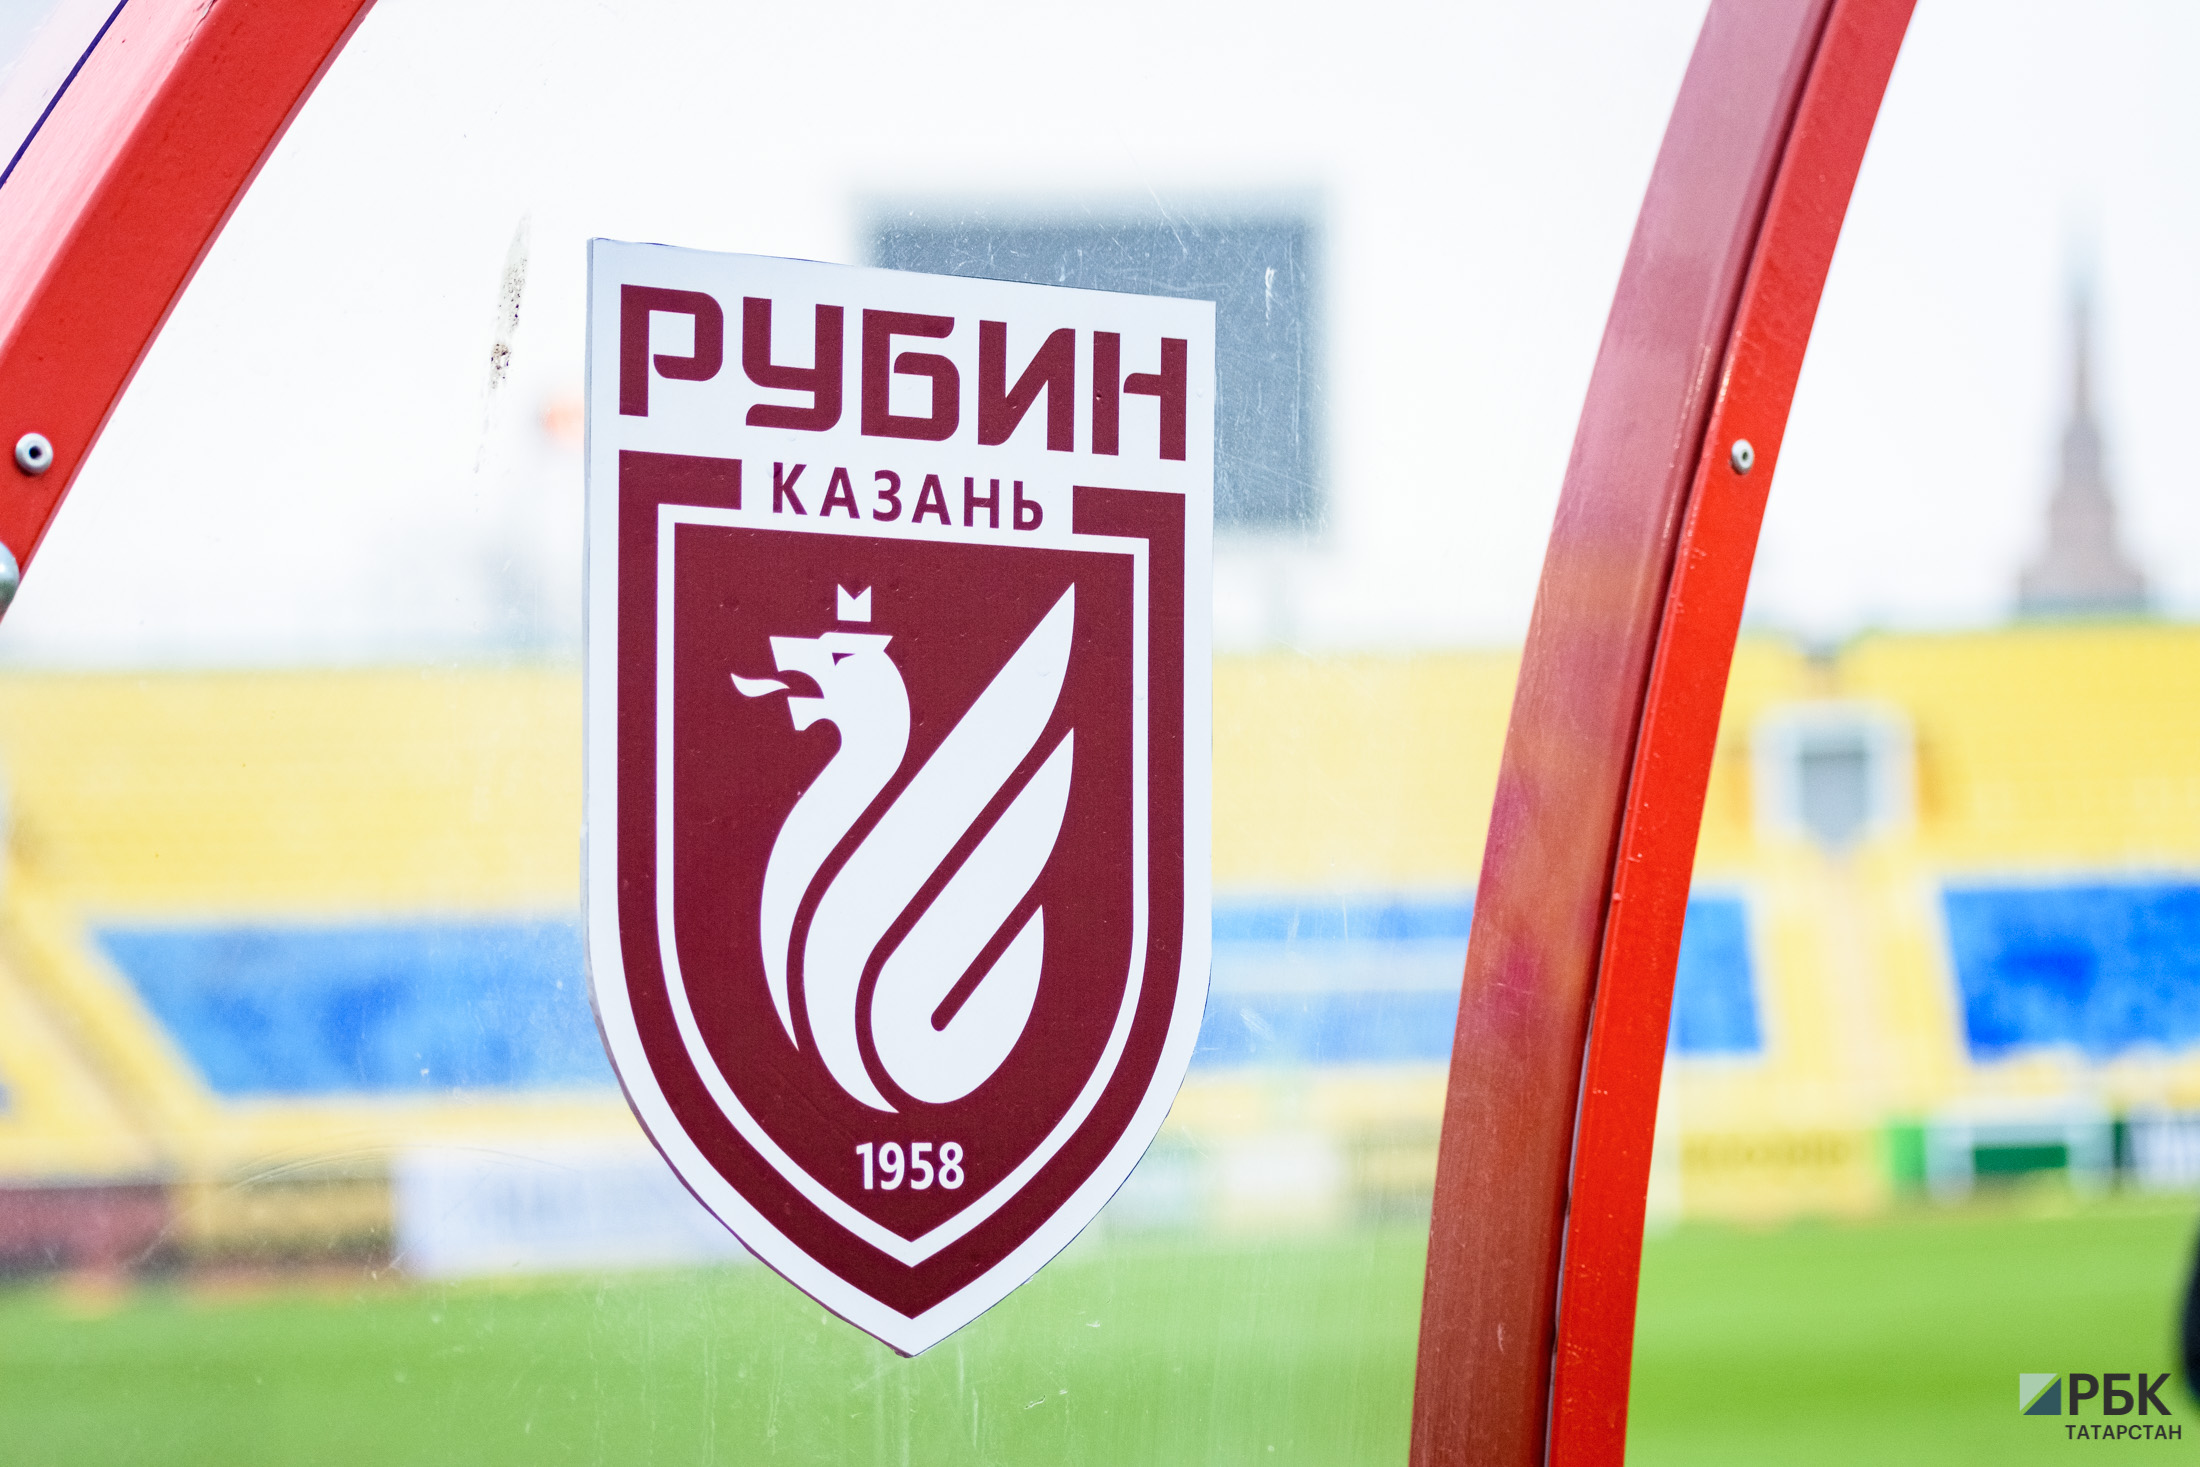 Казанский футбольный клуб «Рубин» возобновляет тренировки